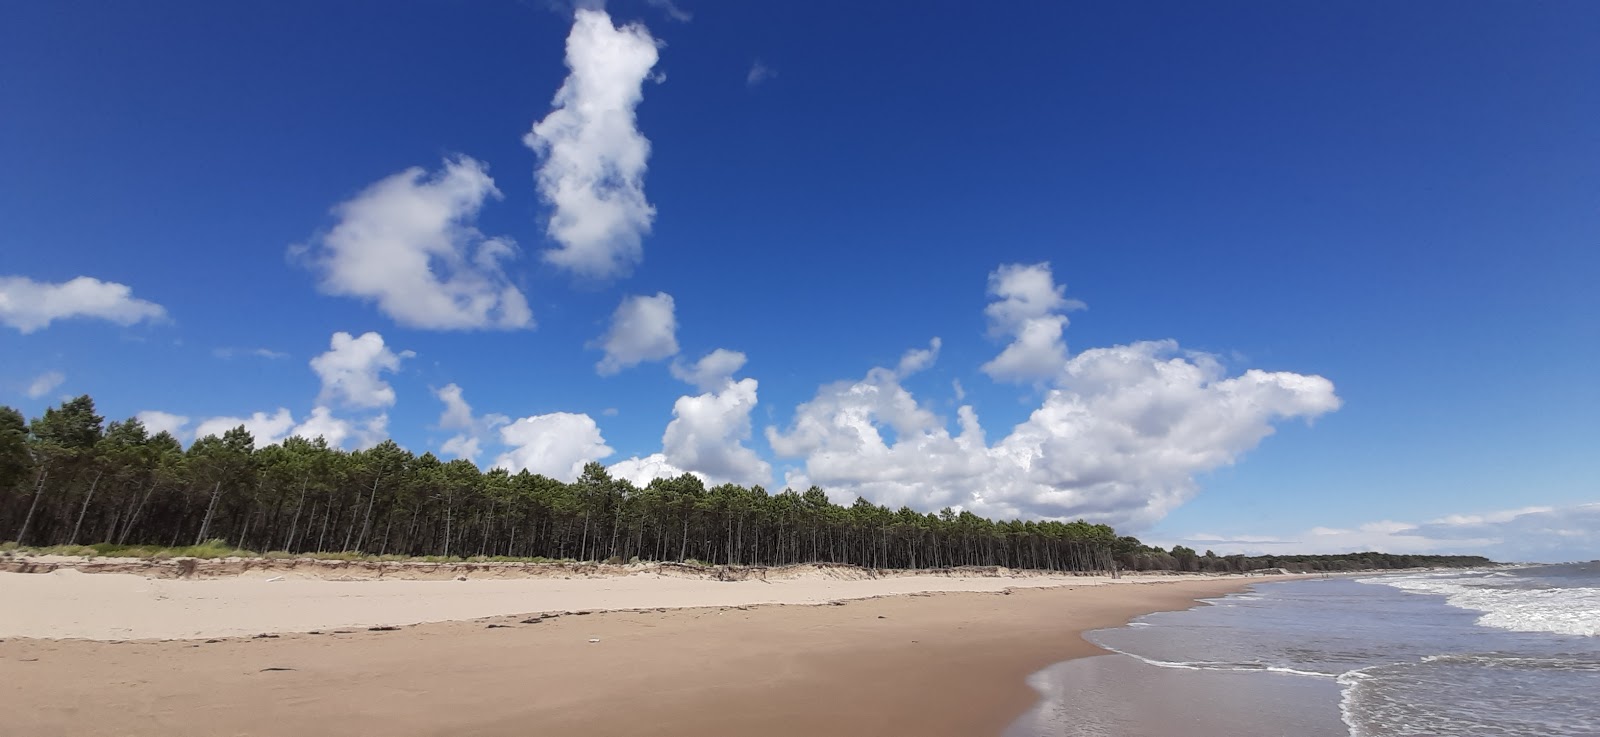 Fotografija Pins de Cordouan z beli pesek površino